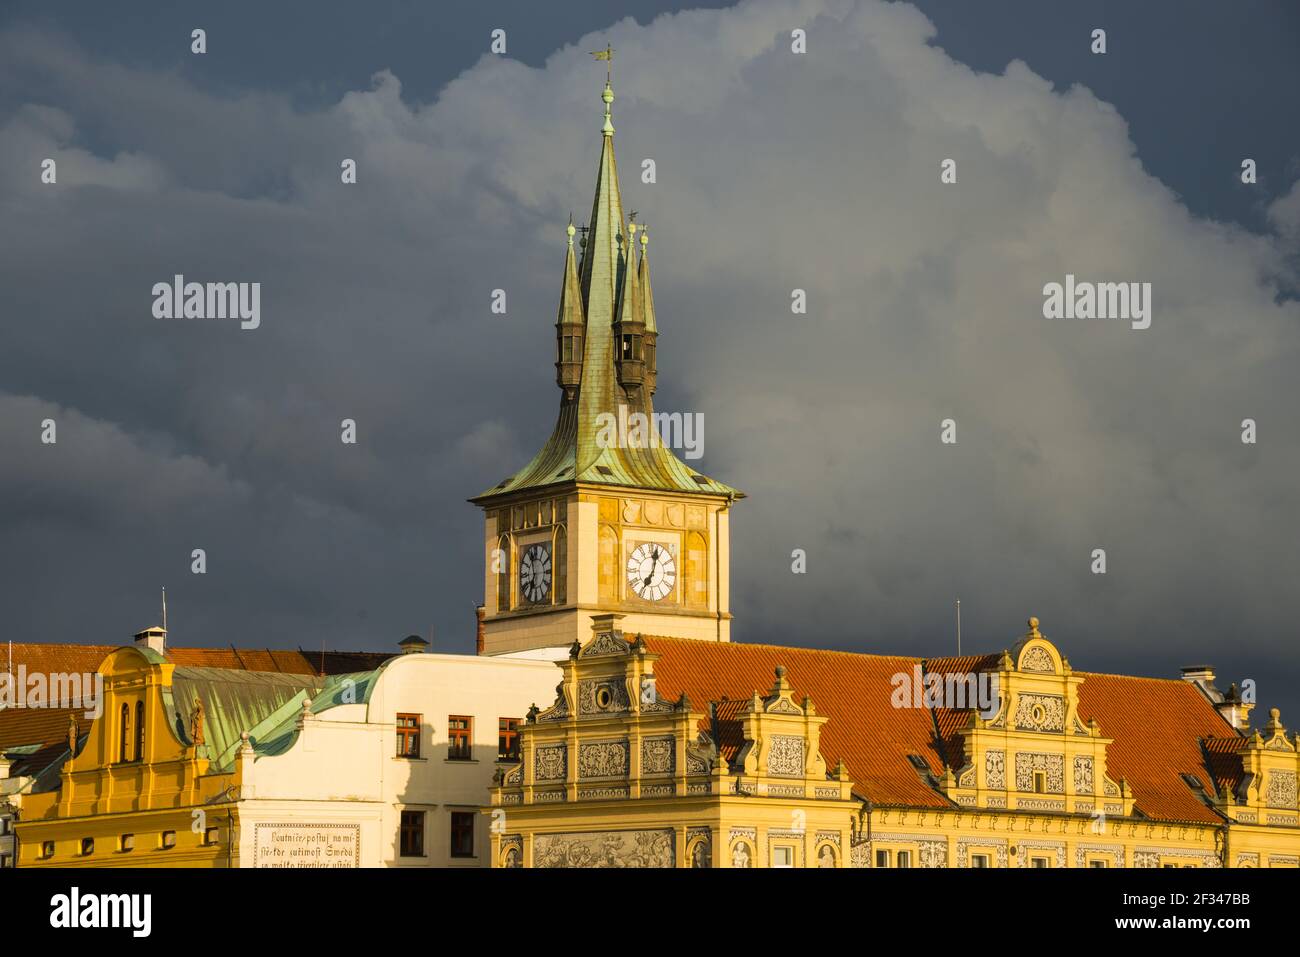 Geografia / viaggio, Czechia, Boemia, Museo Bedrich Smetana nel vecchio acquedotto, dietro di esso della torre dell'acqua della Città Vecchia, SME, Freedom-of-Panorama Foto Stock